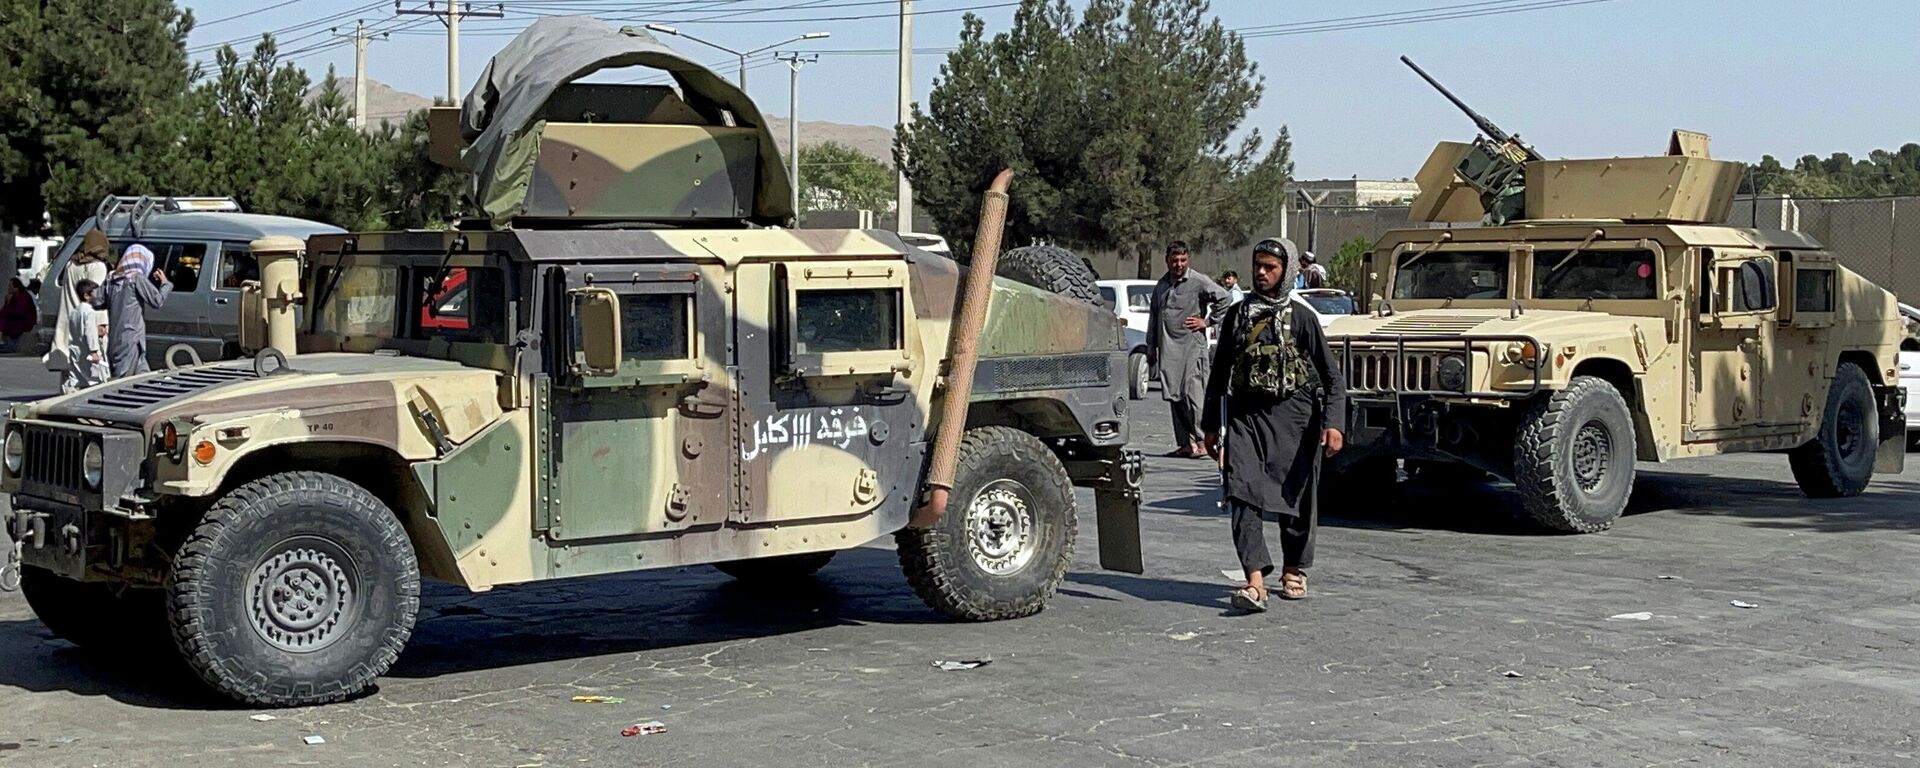 Силы талибов блокировали дорогу в аэропорт Кабула, Афганистан - Sputnik Латвия, 1920, 27.08.2021